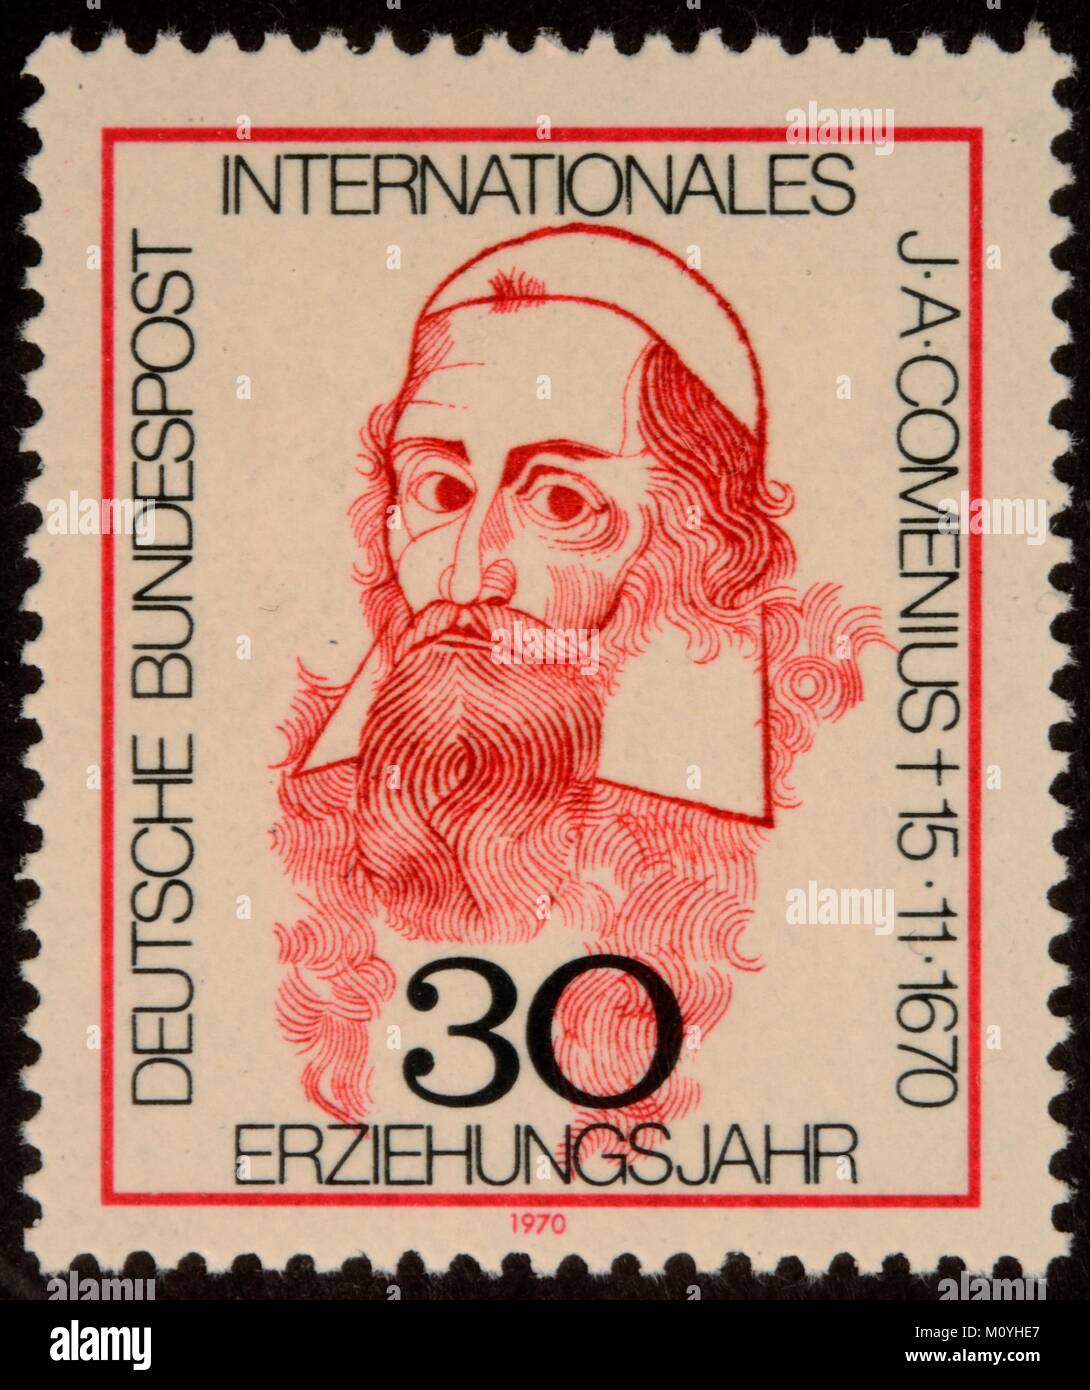 Johan Amos Comenius,un philosophe et pédagogue tchèque,théologien,portrait sur un timbre Allemand 1970 Banque D'Images